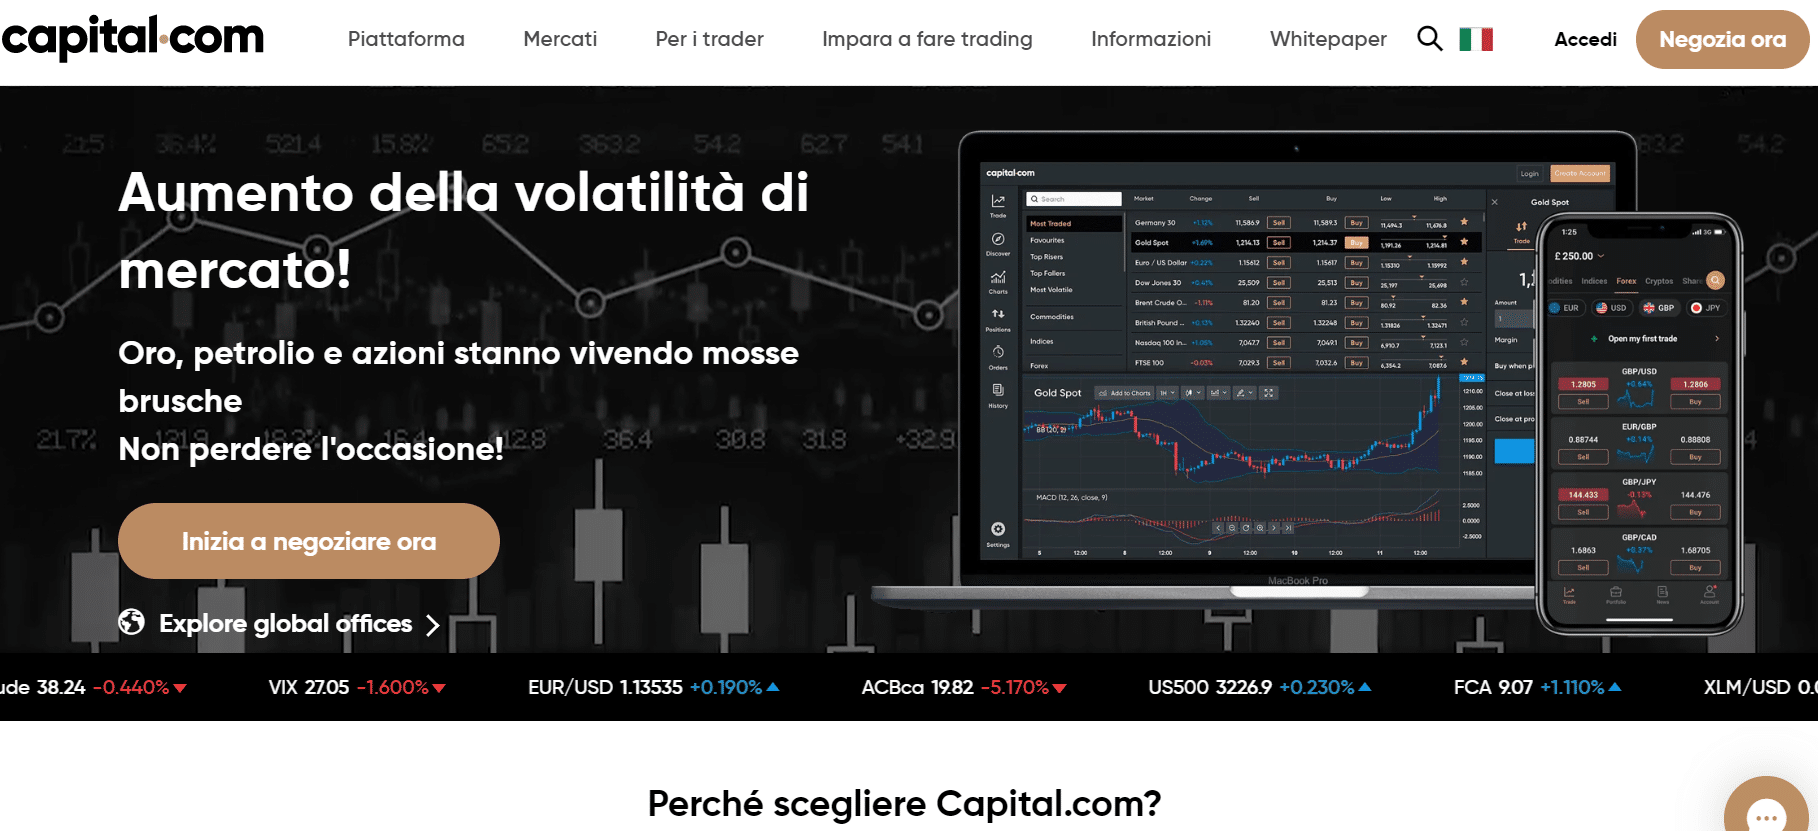 Capital.com broker